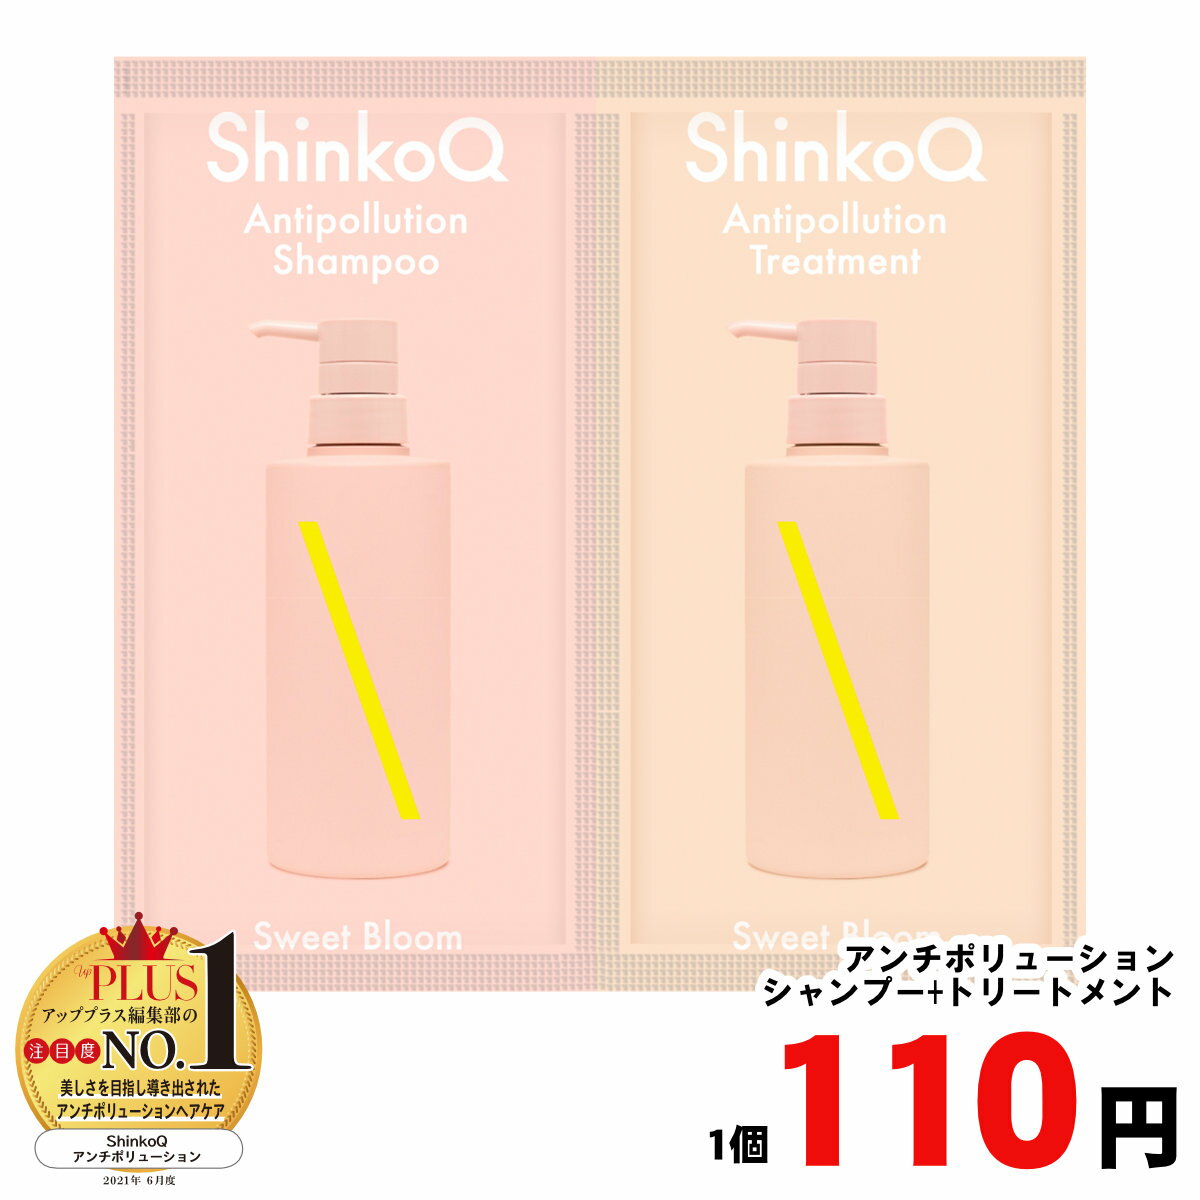 110円【4冠受賞】シャンプー シンコ